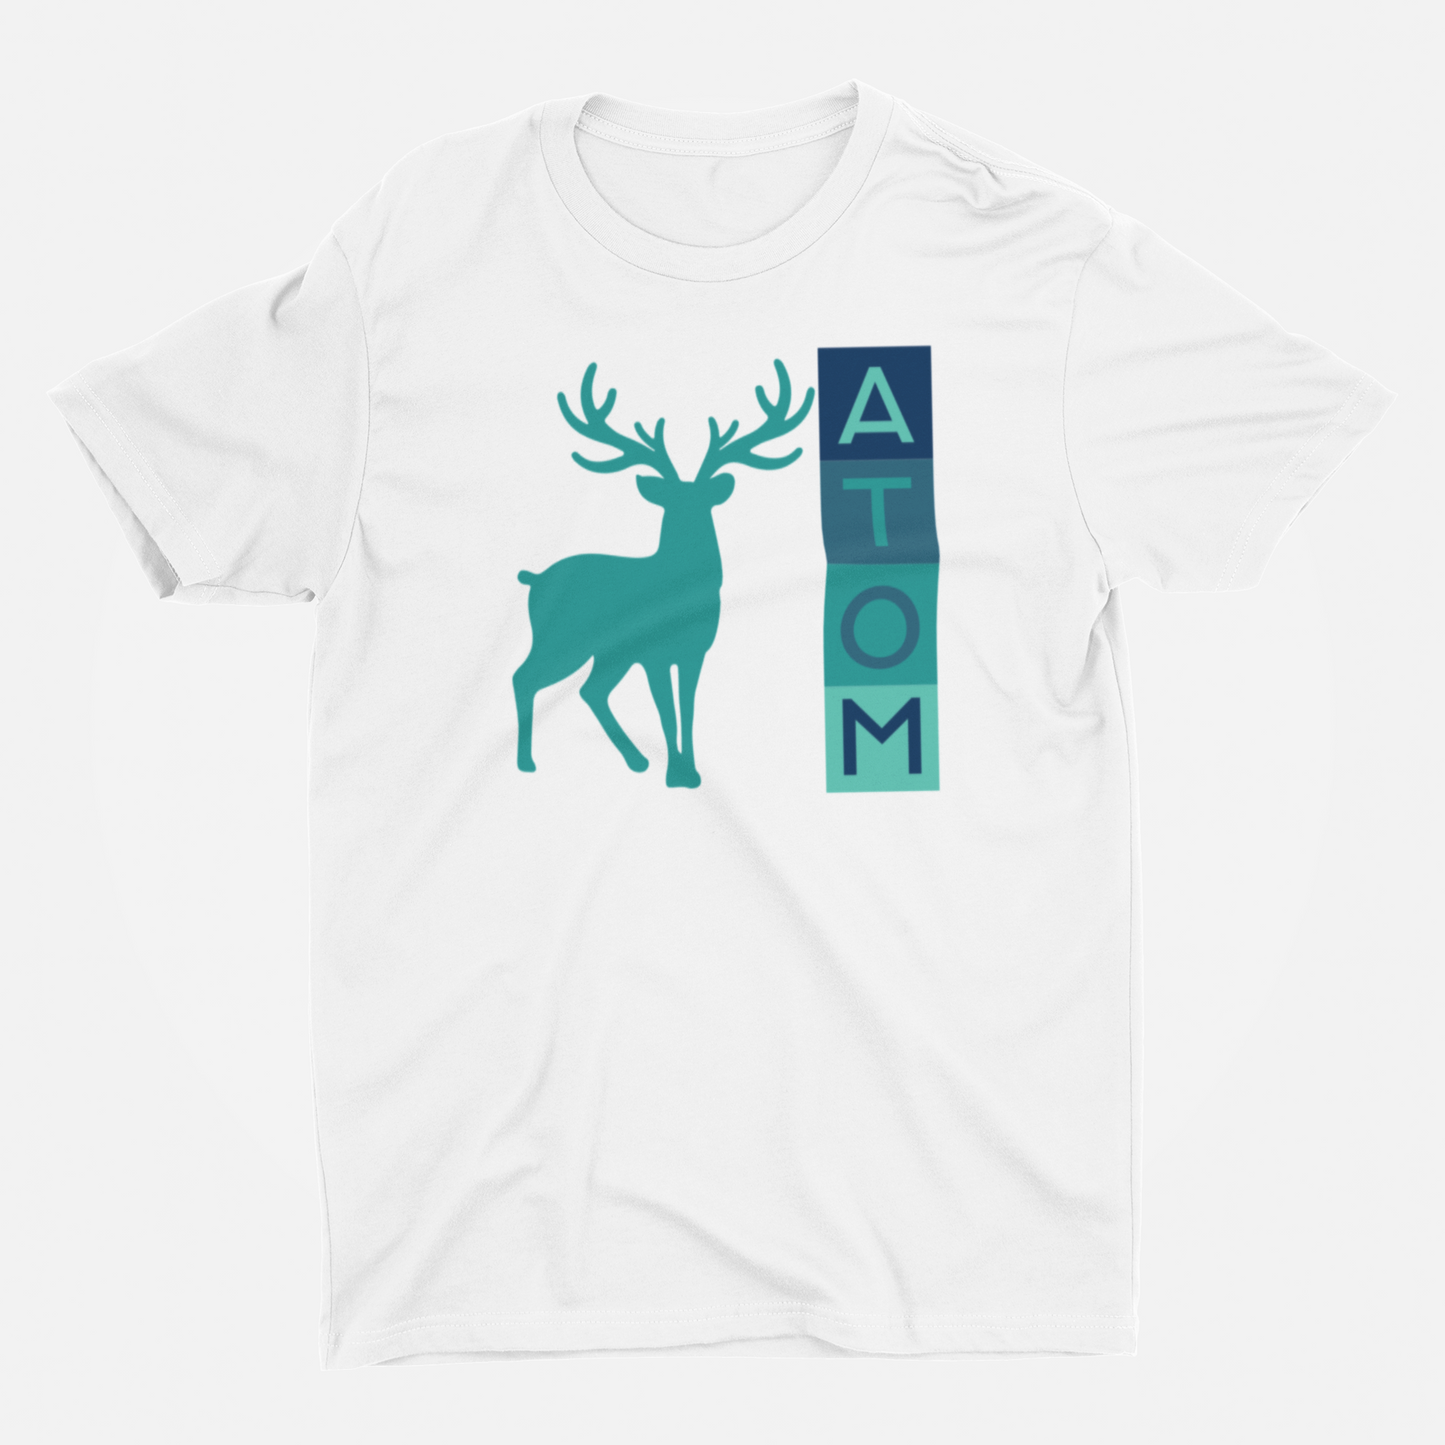 ATOM Signature Vertical Box Design Round Neck T-Shirt for Men.